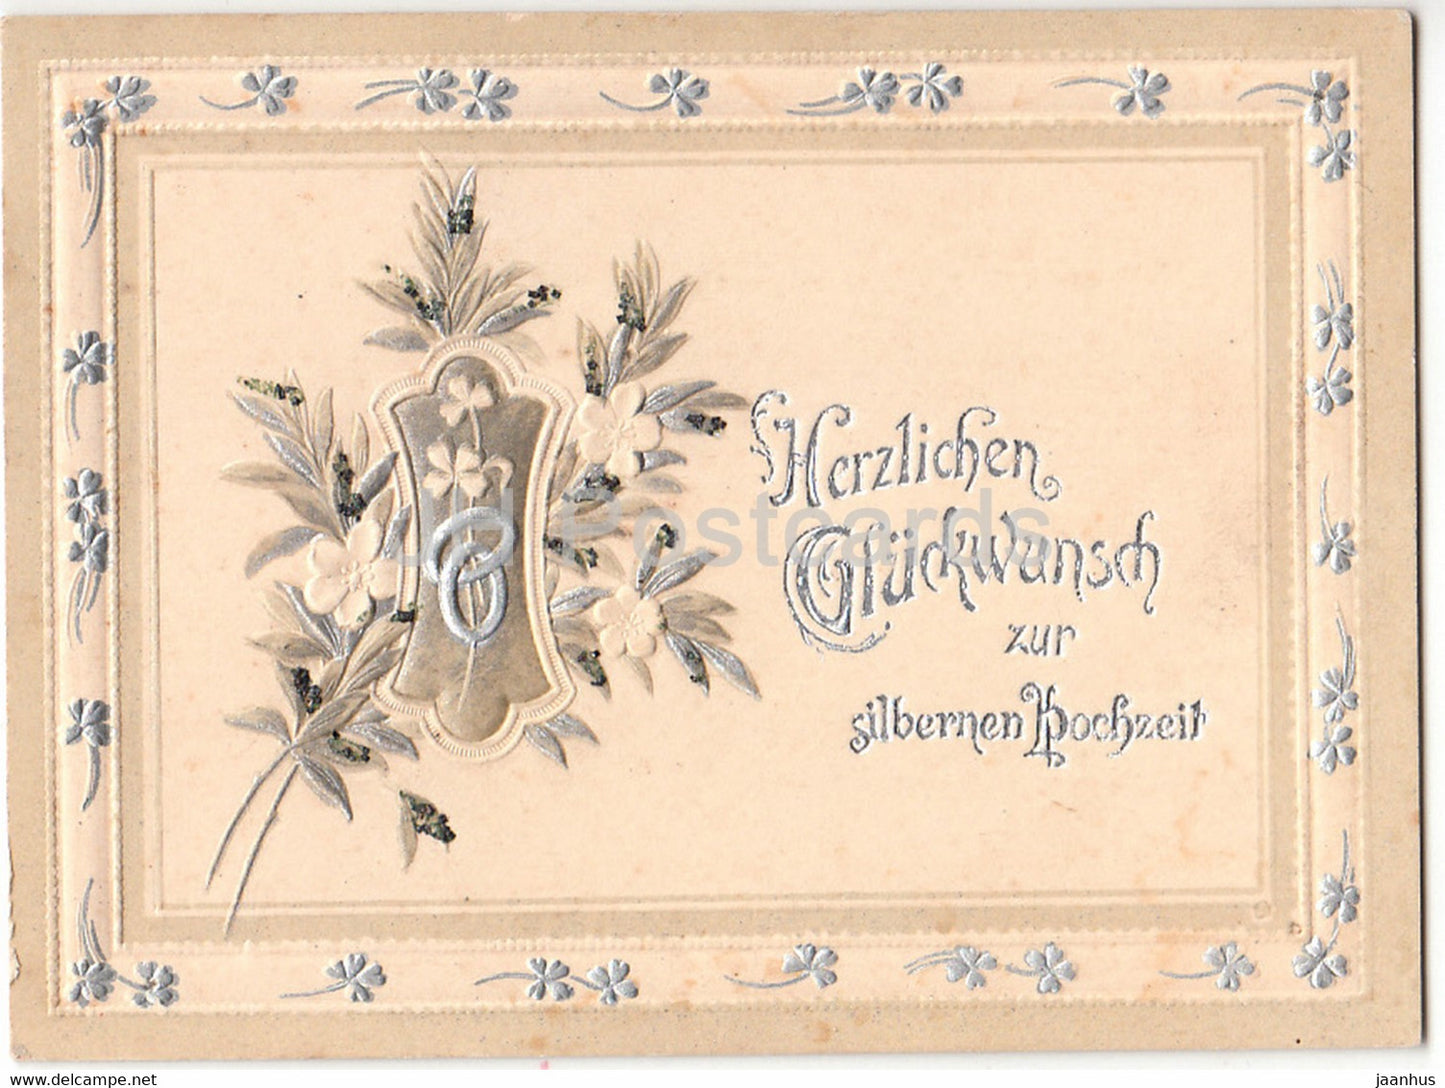 Mini Silver Weddings Greeting Card - Herzlichen Gluckwunsch zur silbernen Hochzeit - old postcard - Germany - unused - JH Postcards